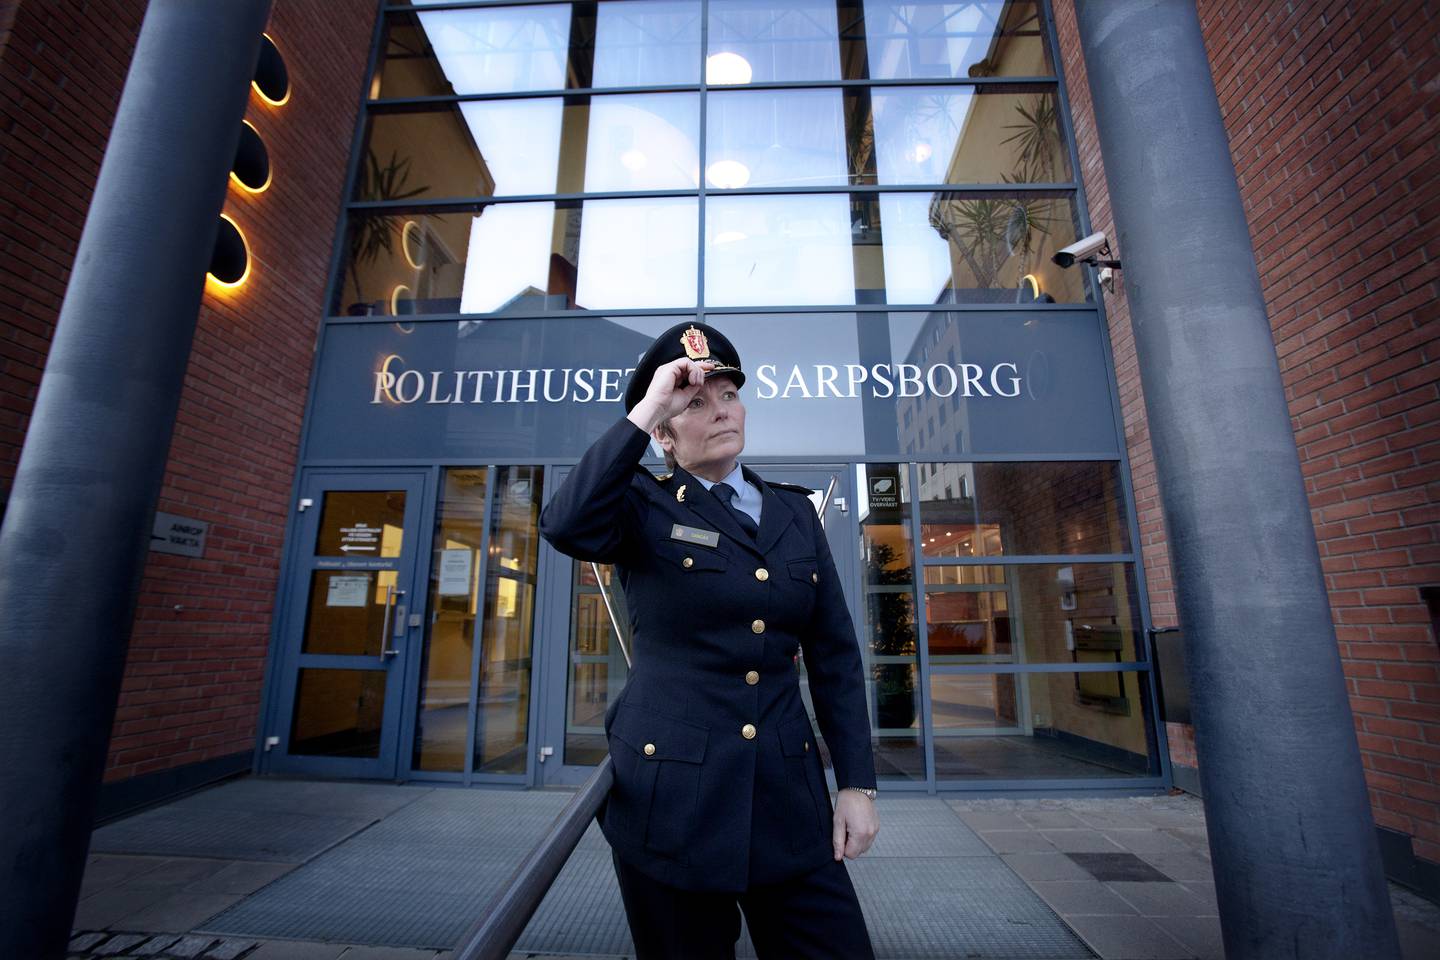 Fra 2010 til 2014 var Gangås politimester i Østfold politidistrikt. Her utenfor politihuset i Sarpsborg i 2010.